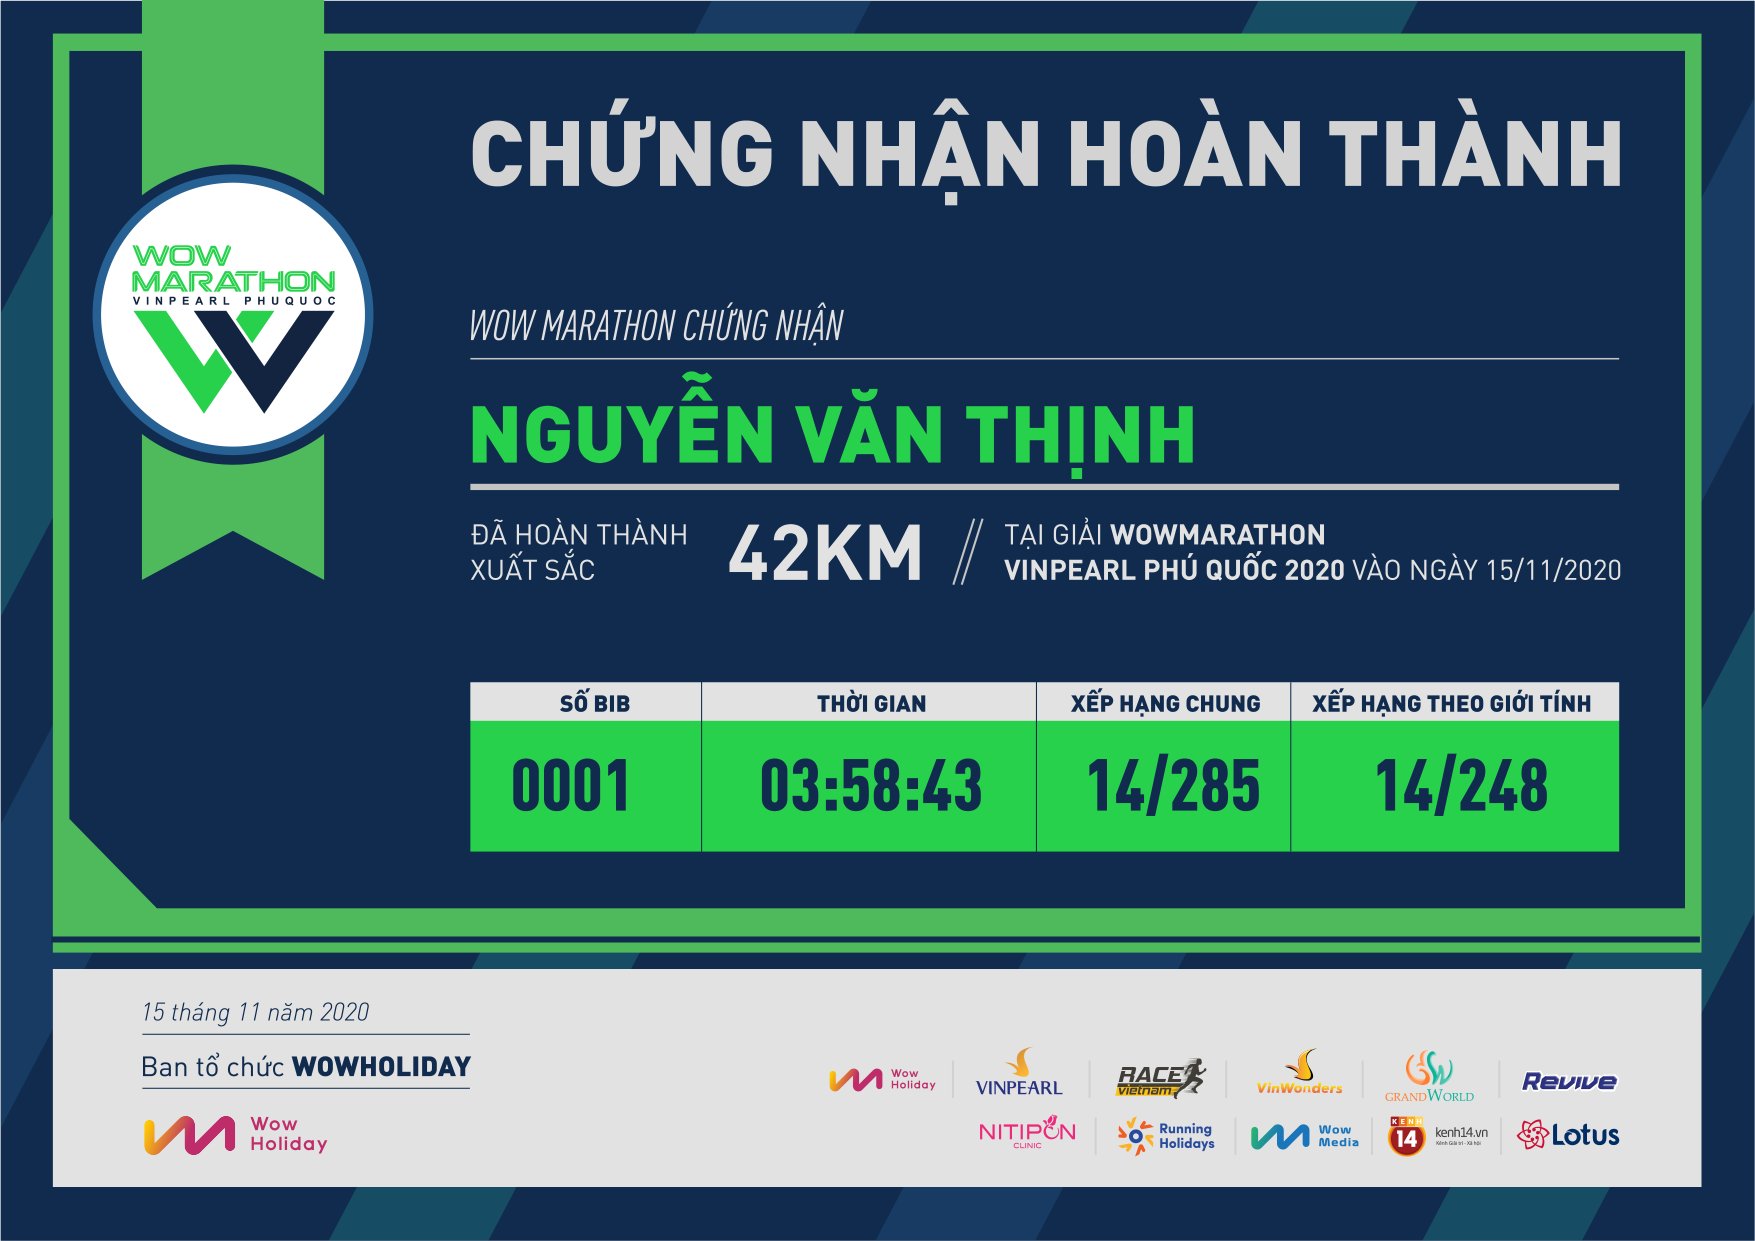 0001 - Nguyễn Văn Thịnh